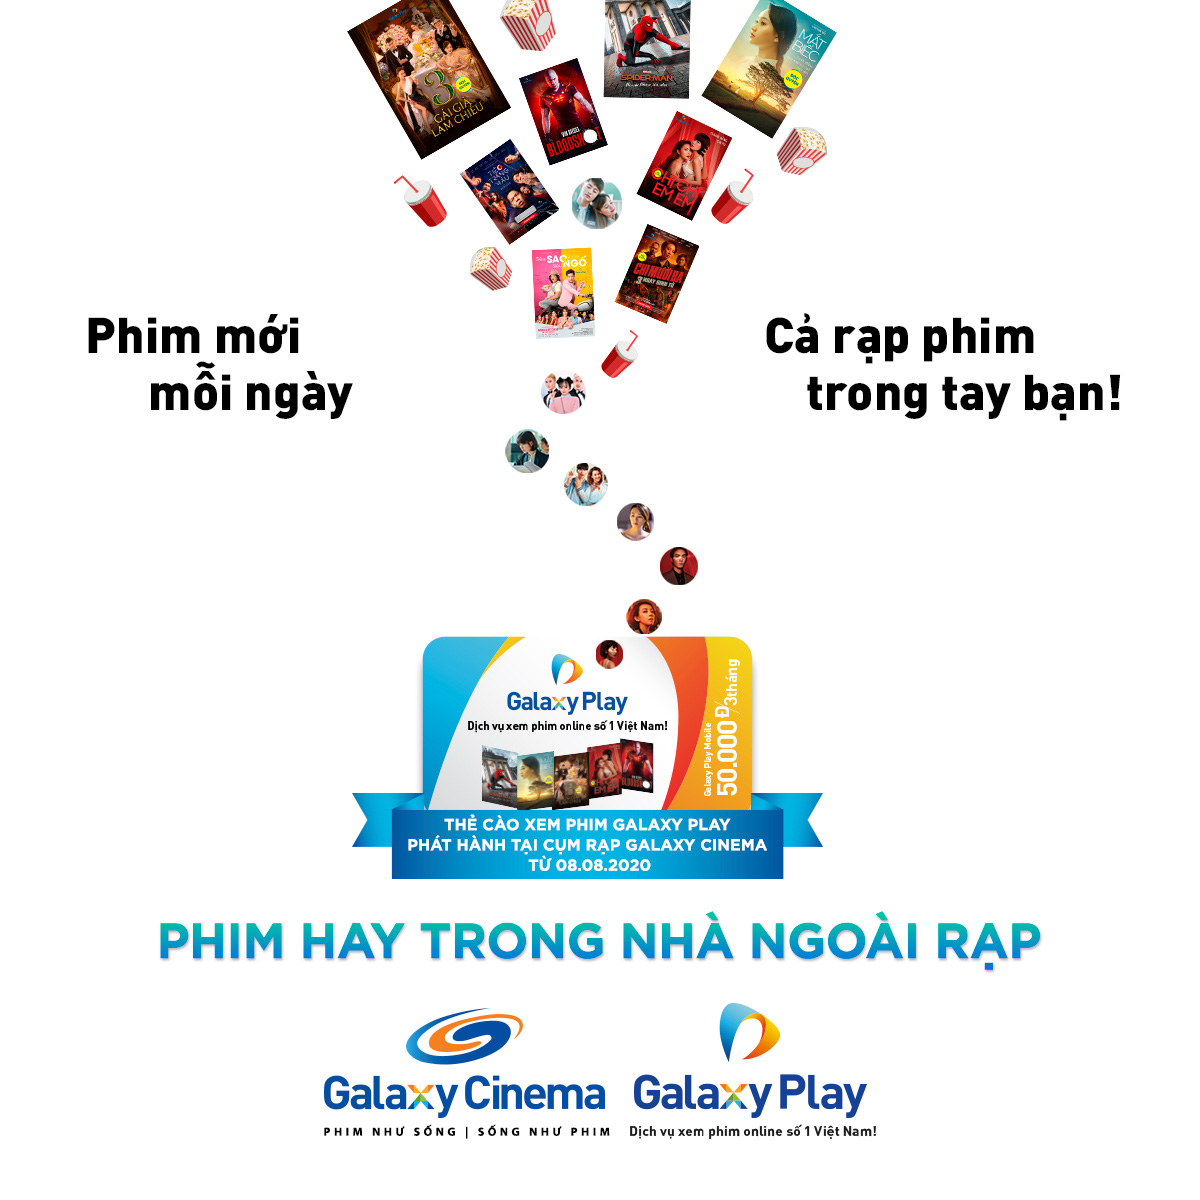 “Mọt phim” hãy đến Galaxy Cinema ngay để được xem phim hay từ nhà đến rạp - Ảnh 4.